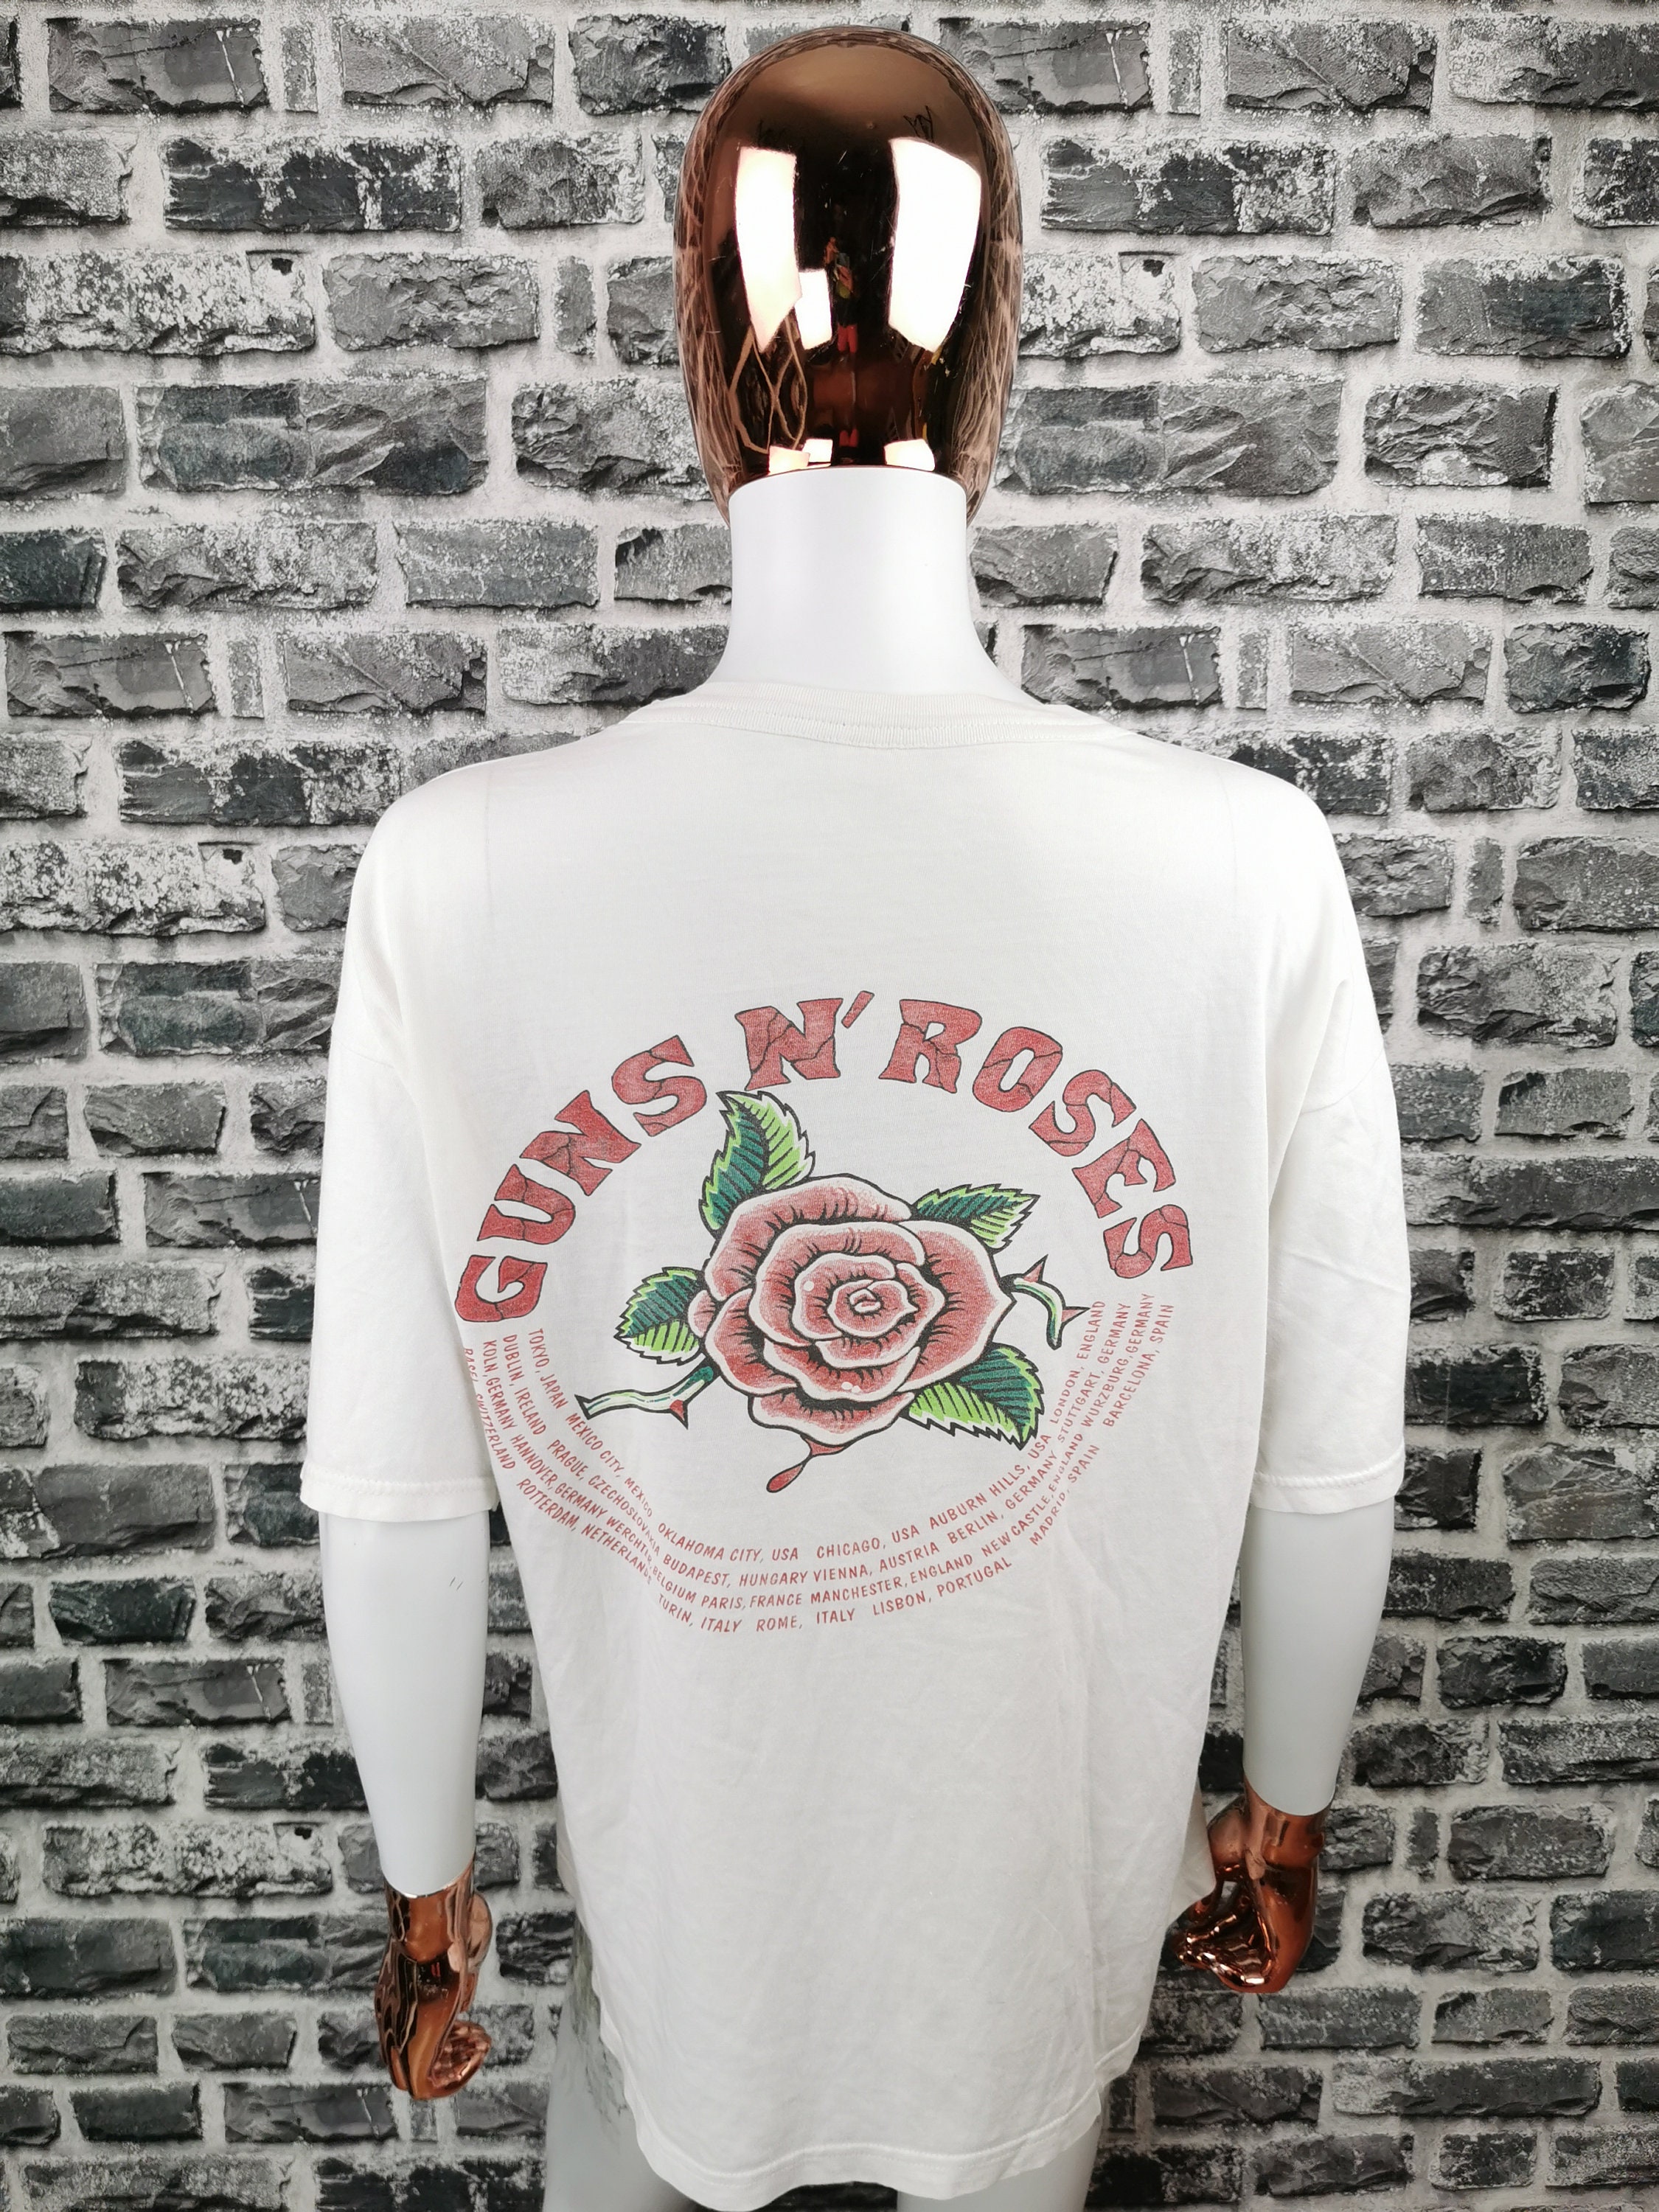 Kleding Herenkleding Overhemden & T-shirts T-shirts GUNS N ROSES 1989 Vintage T-Shirt Een In Een Miljoen GNR Shirt 